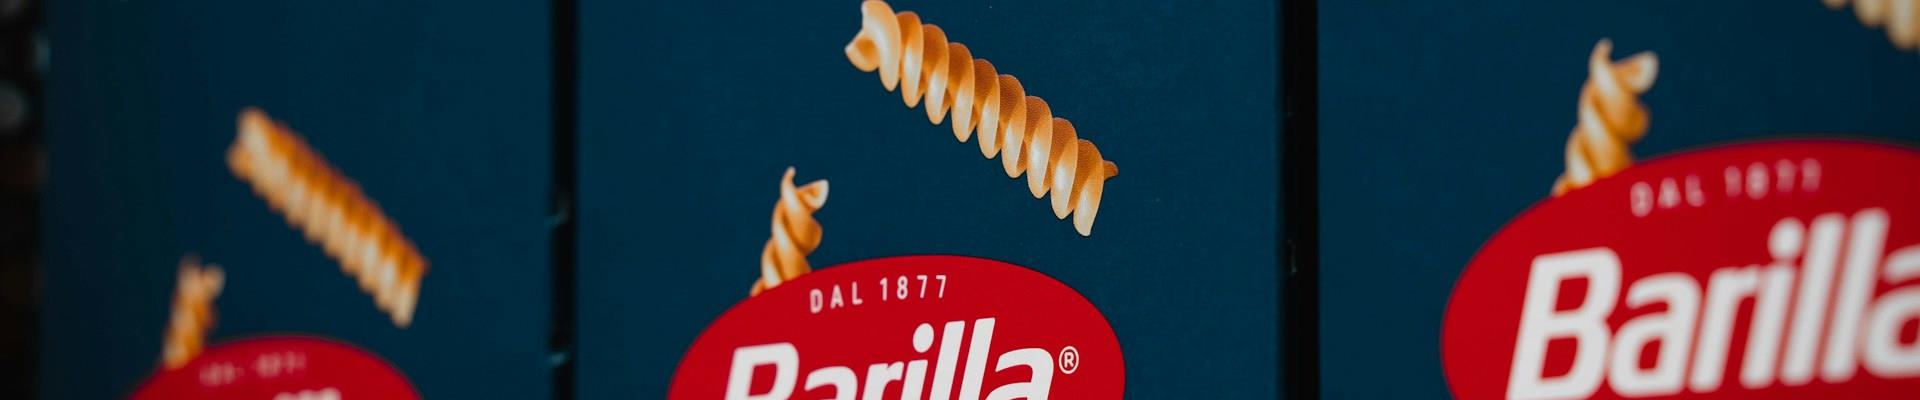 Nova campanha da Barilla tem a contratação de especialista em arrumação